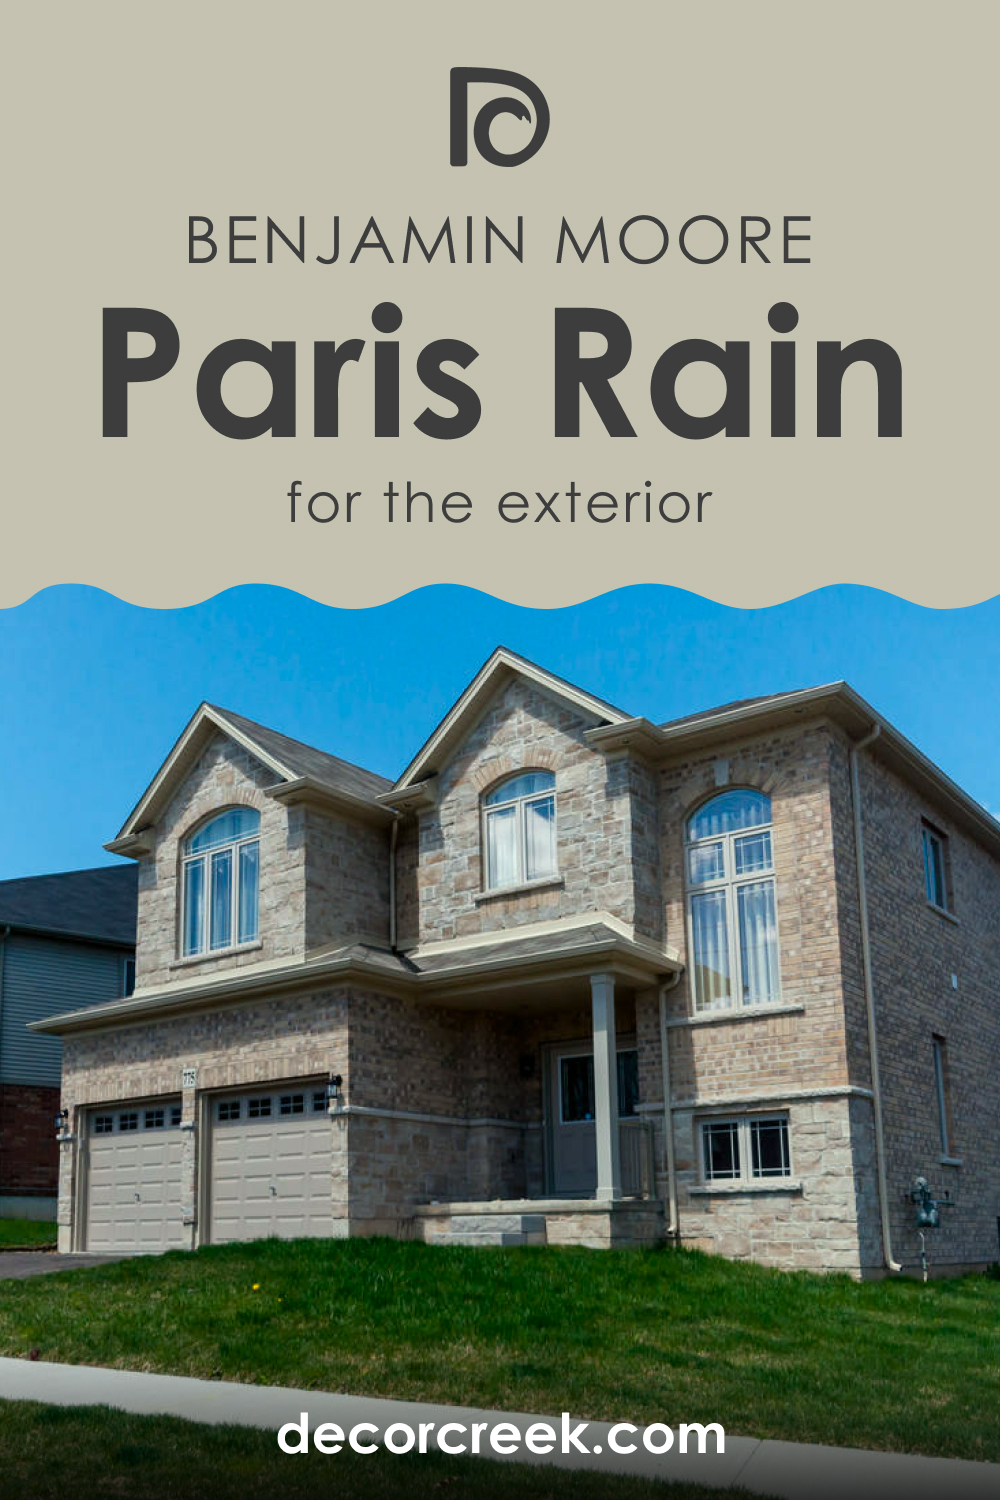 Paris Rain 1501 for Exteriors